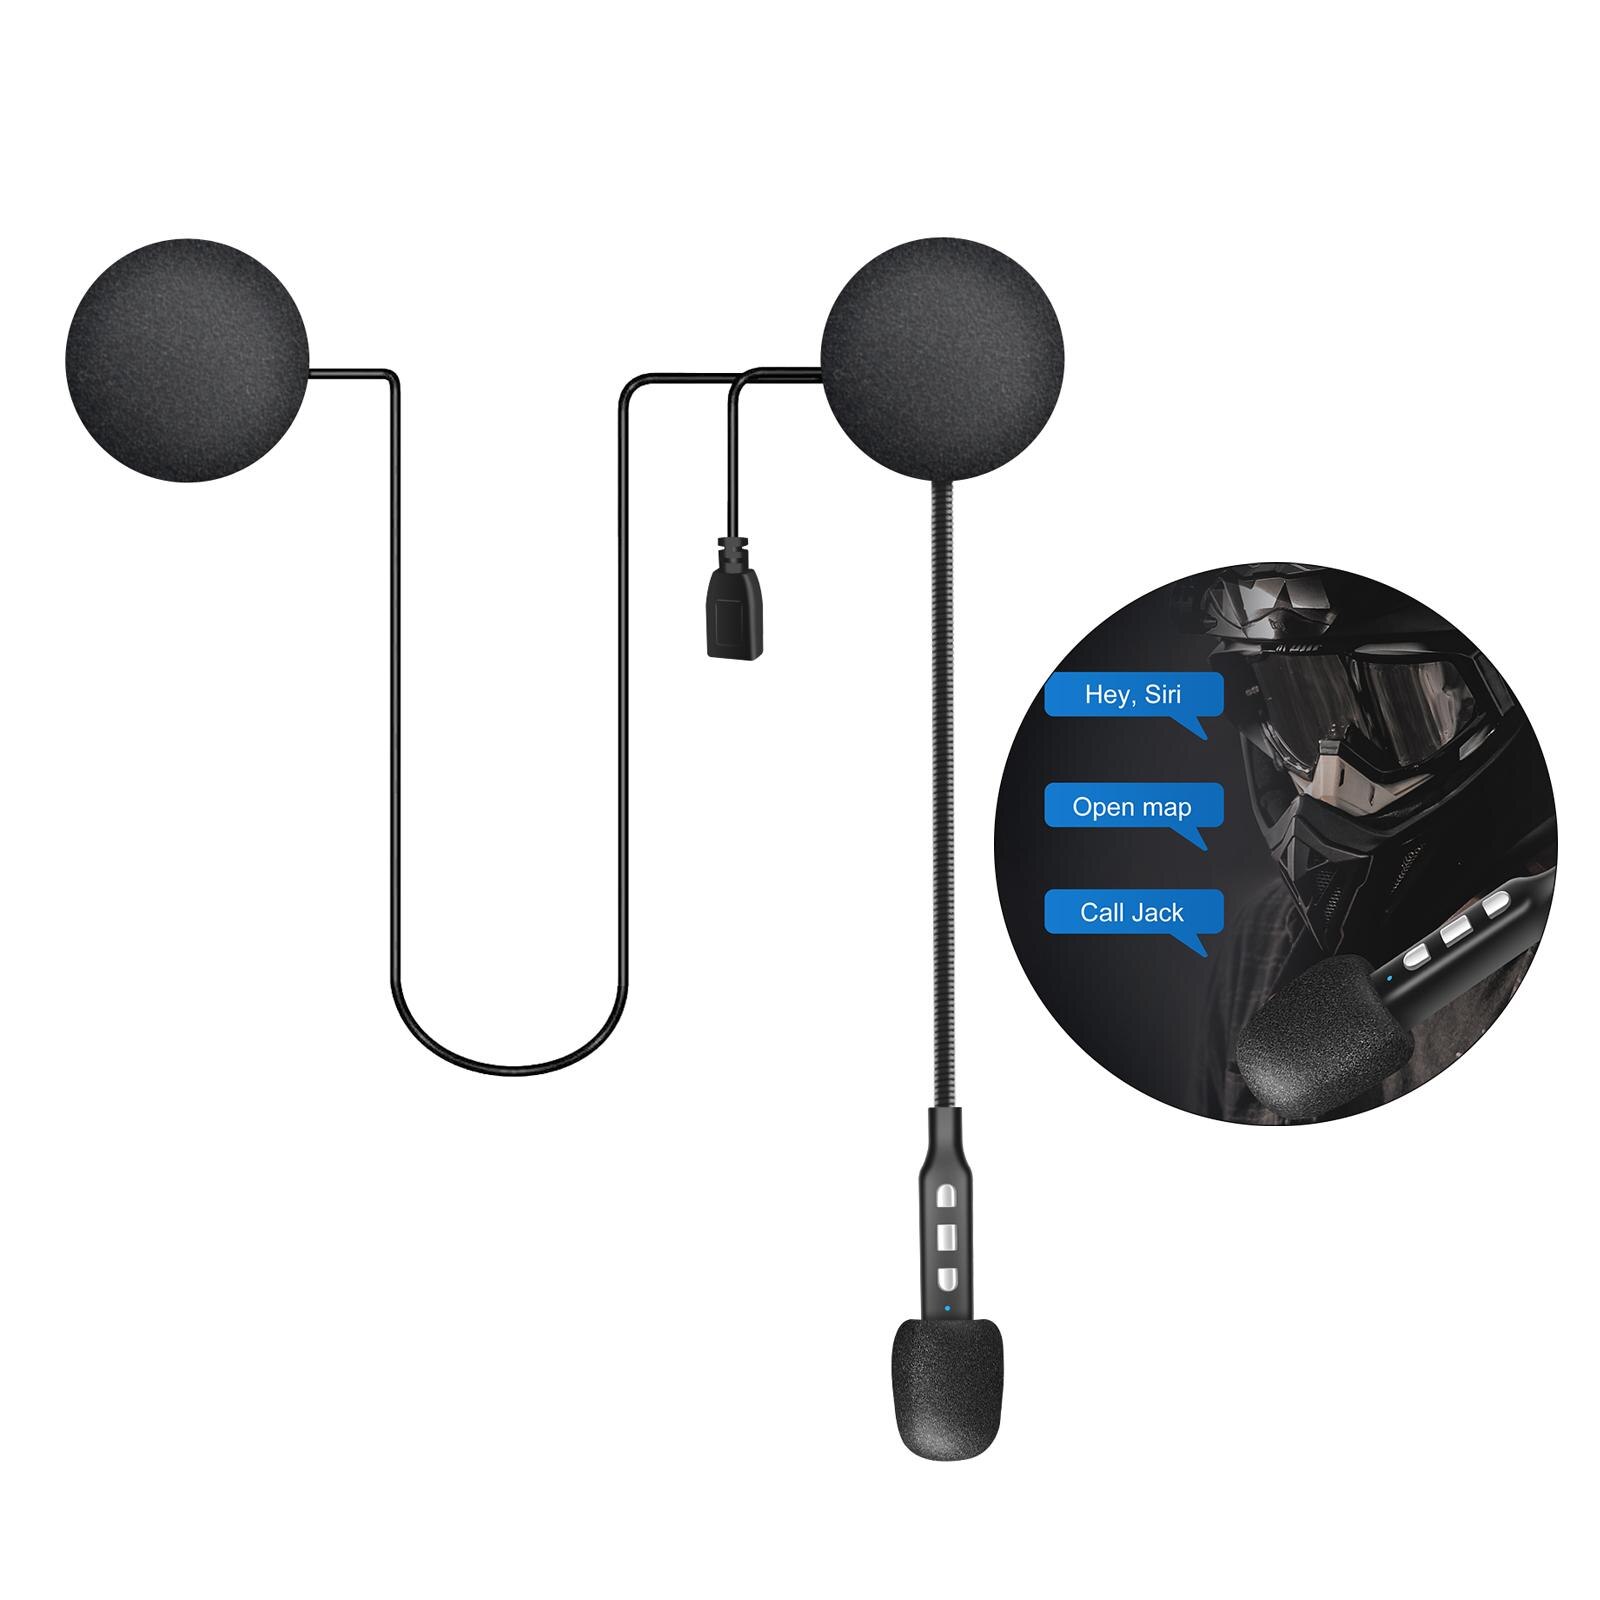 Draadloze Motorhelm Headset Smartphone Anti-Interferentie Speaker Bluetooth Hoofdtelefoon Voor Paardrijden Skiën Ruisonderdrukking